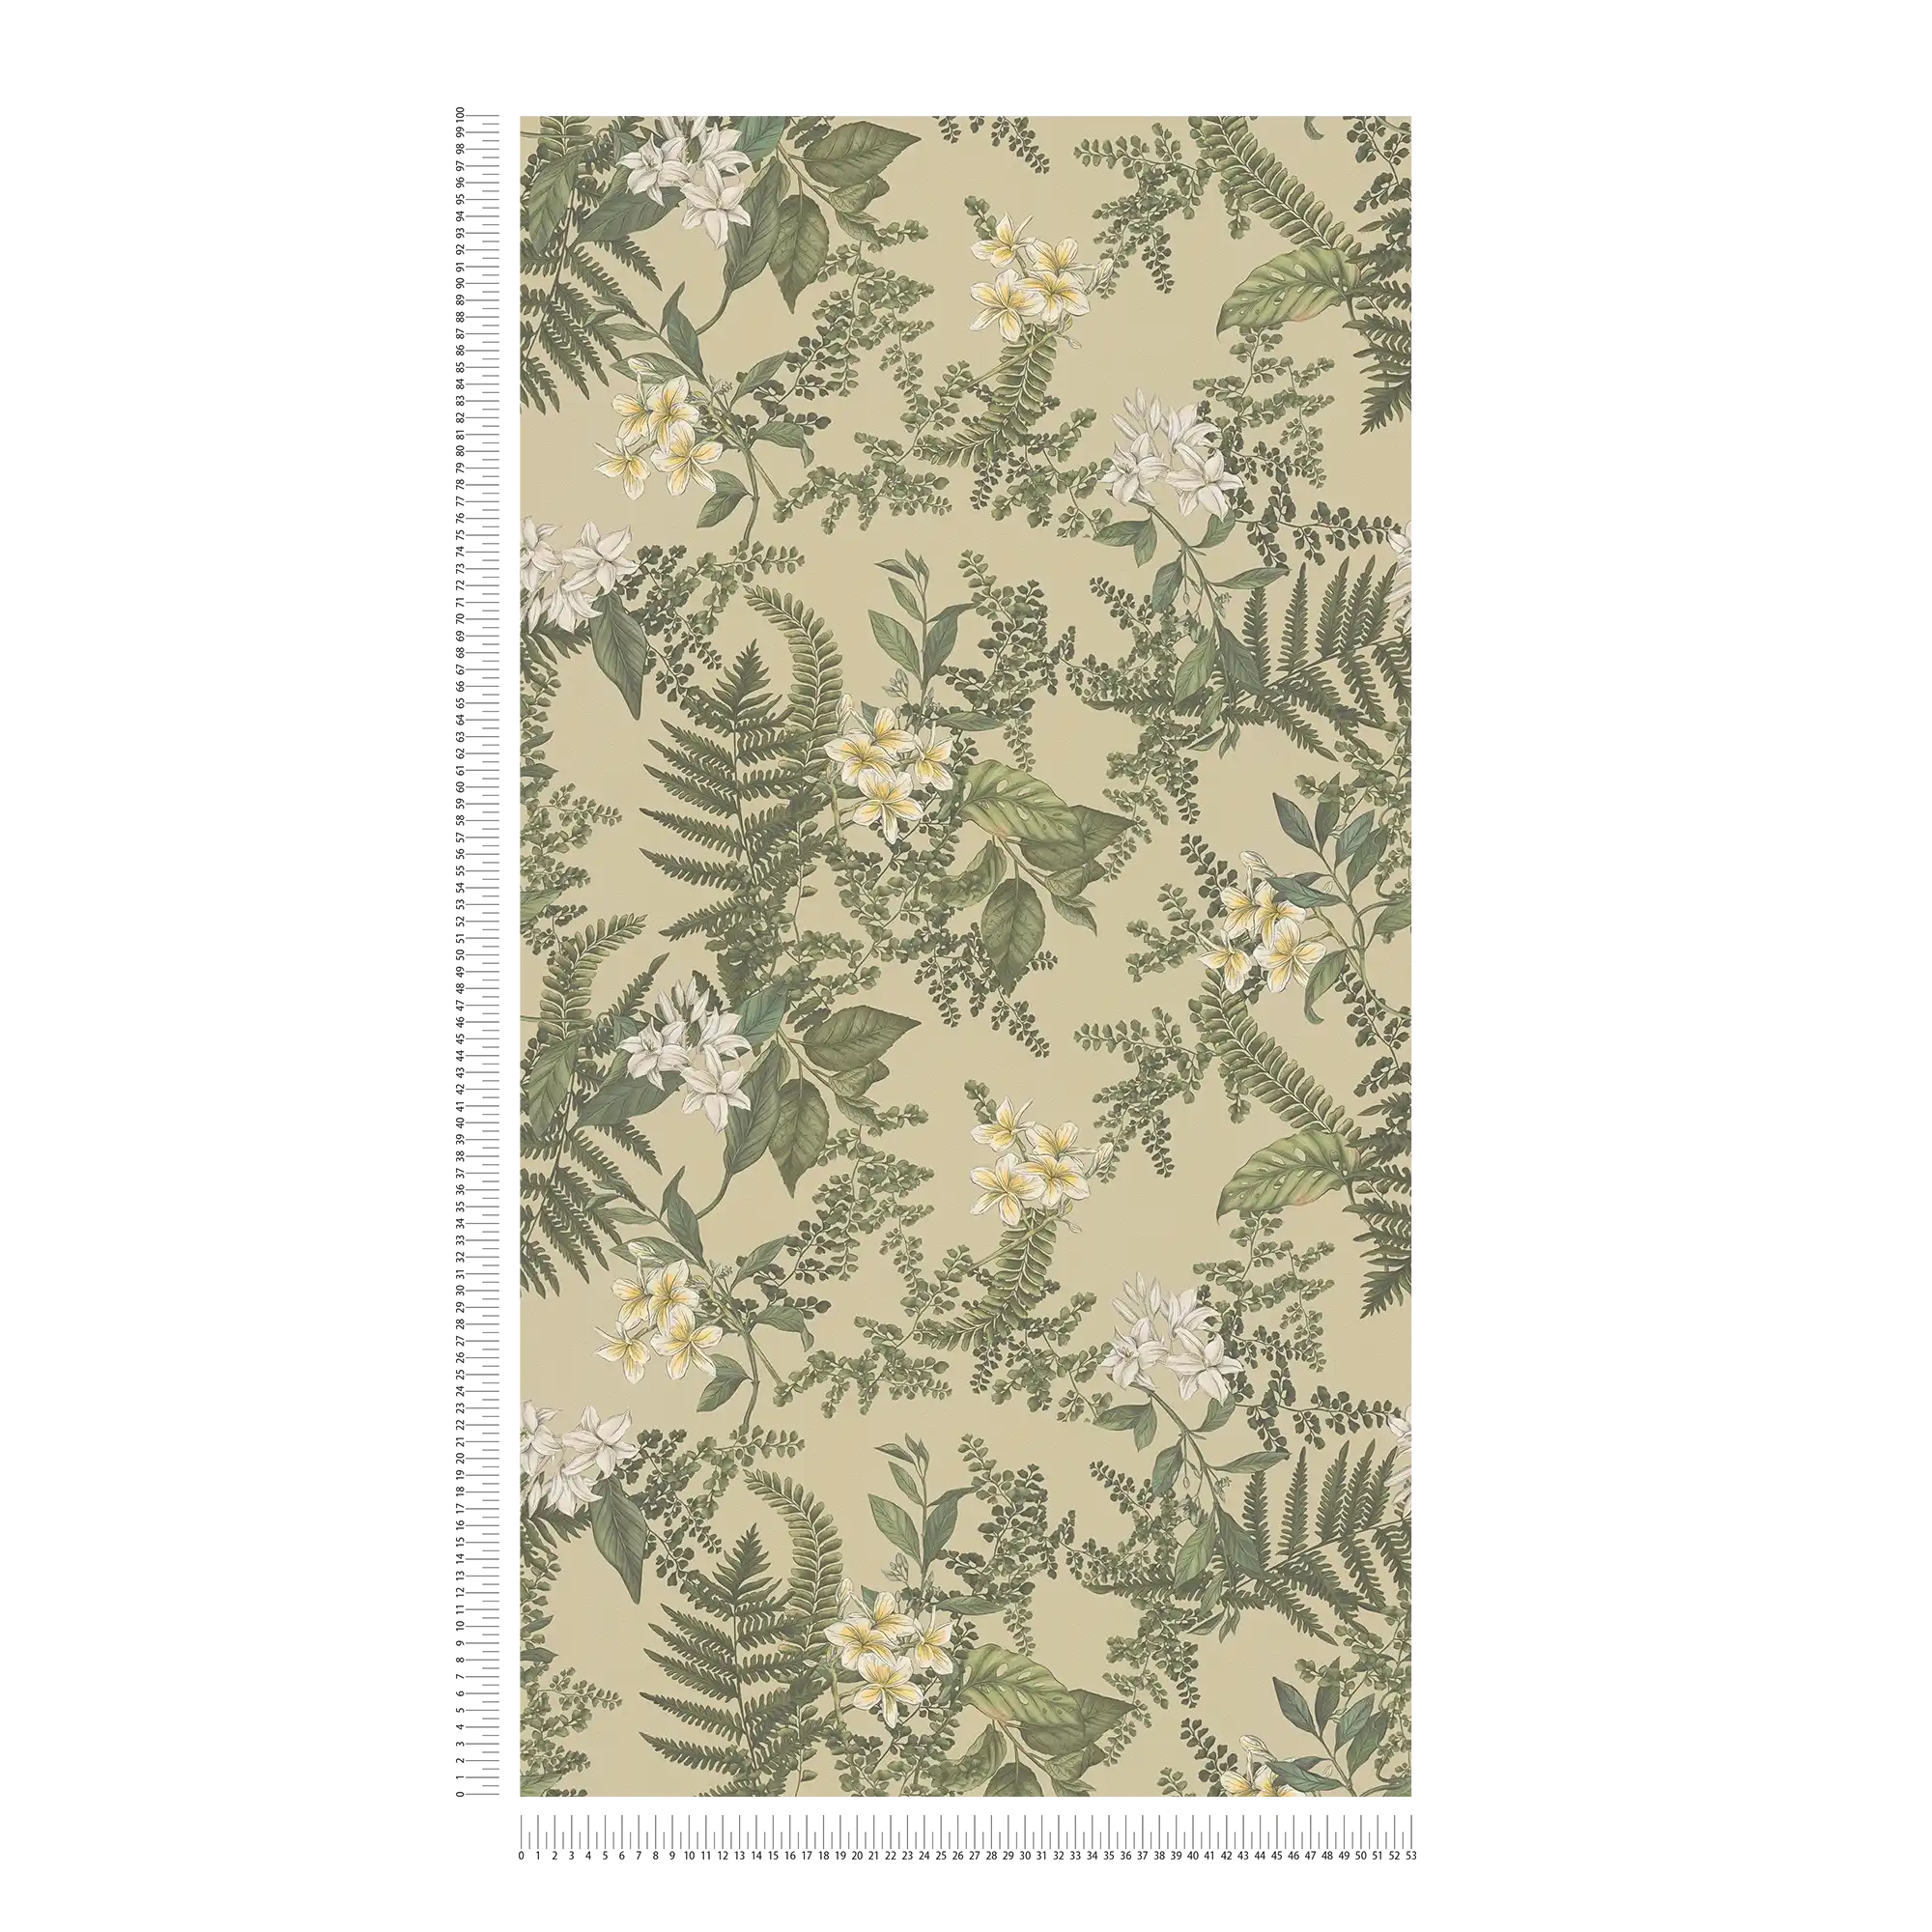             Tapete im floralen Stil mit Blüten & Gräsern strukturiert matt – Grün, Dunkelgrün, Weiß
        